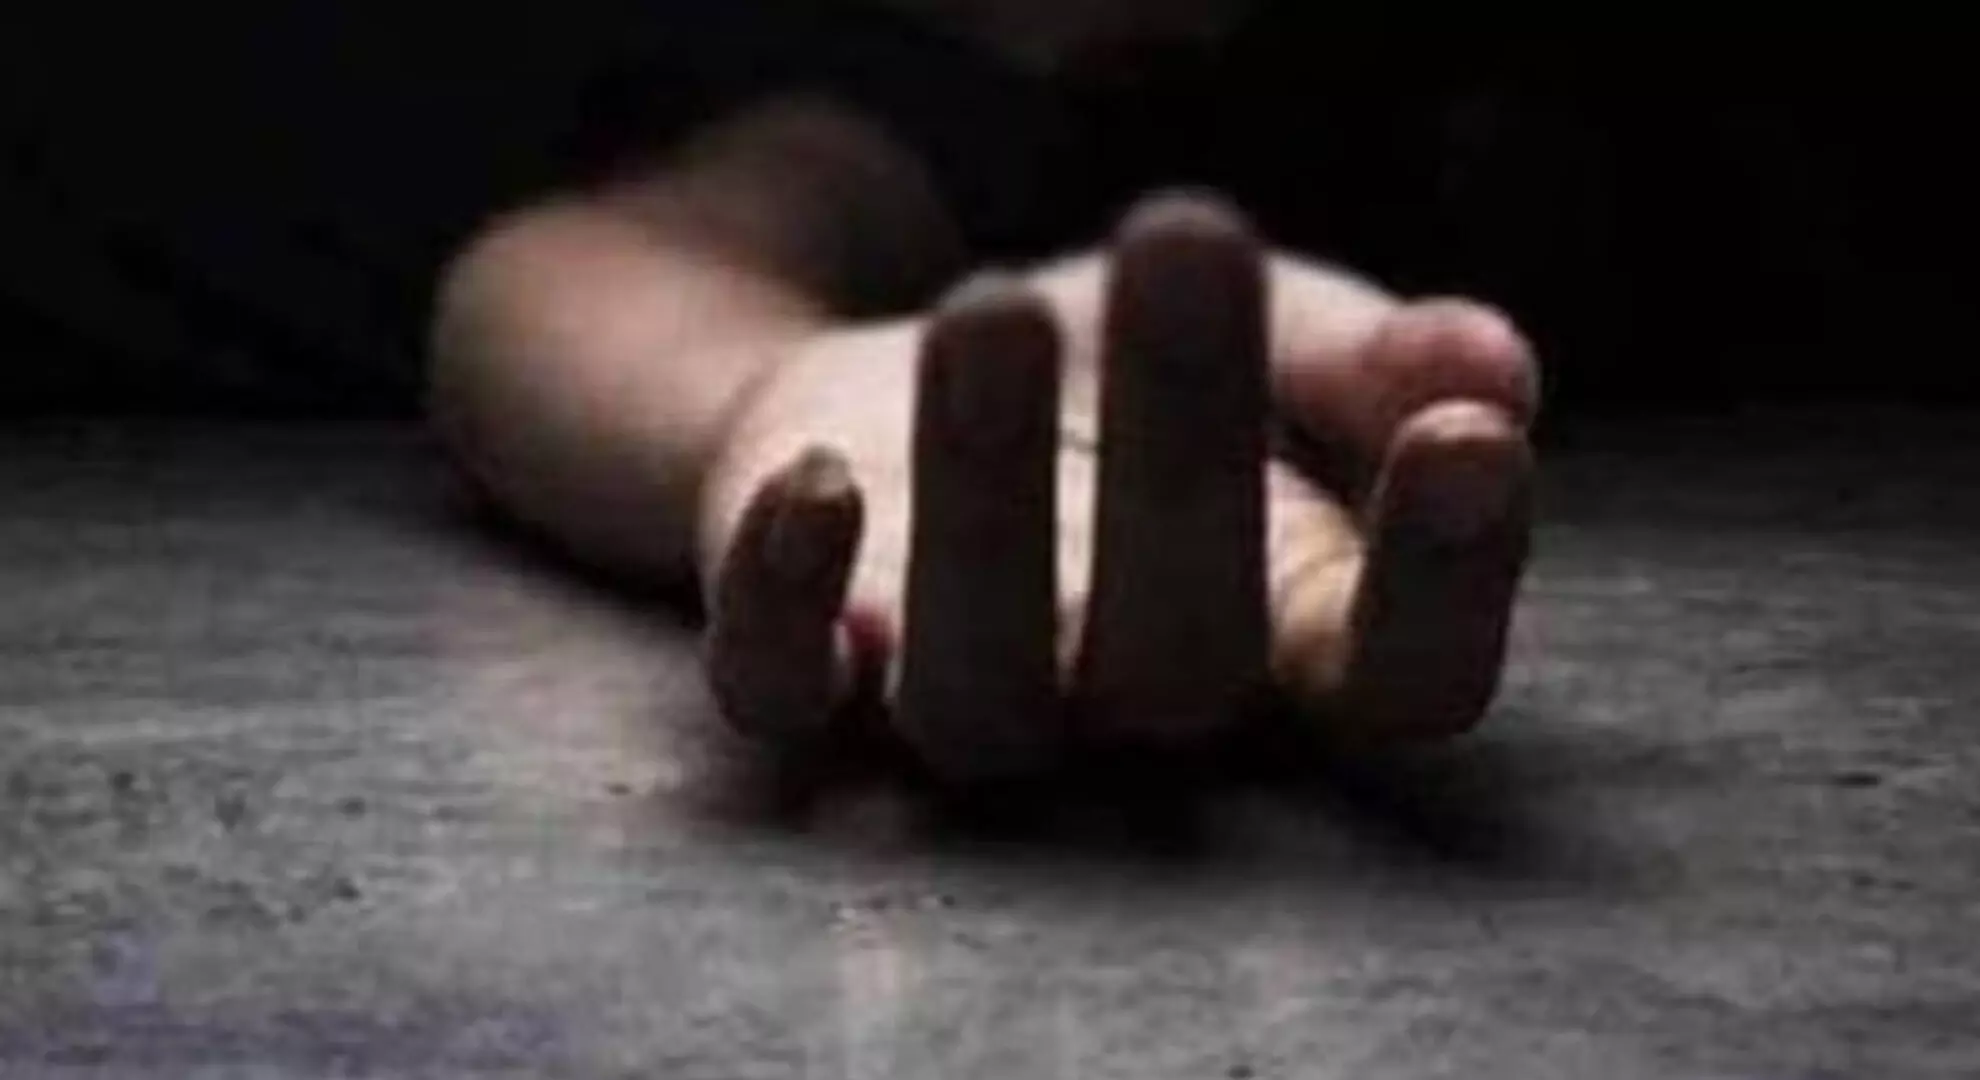 प्यार में असफलता से परेशान होकर हैदराबाद के तकनीकी विशेषज्ञ ने की आत्महत्या